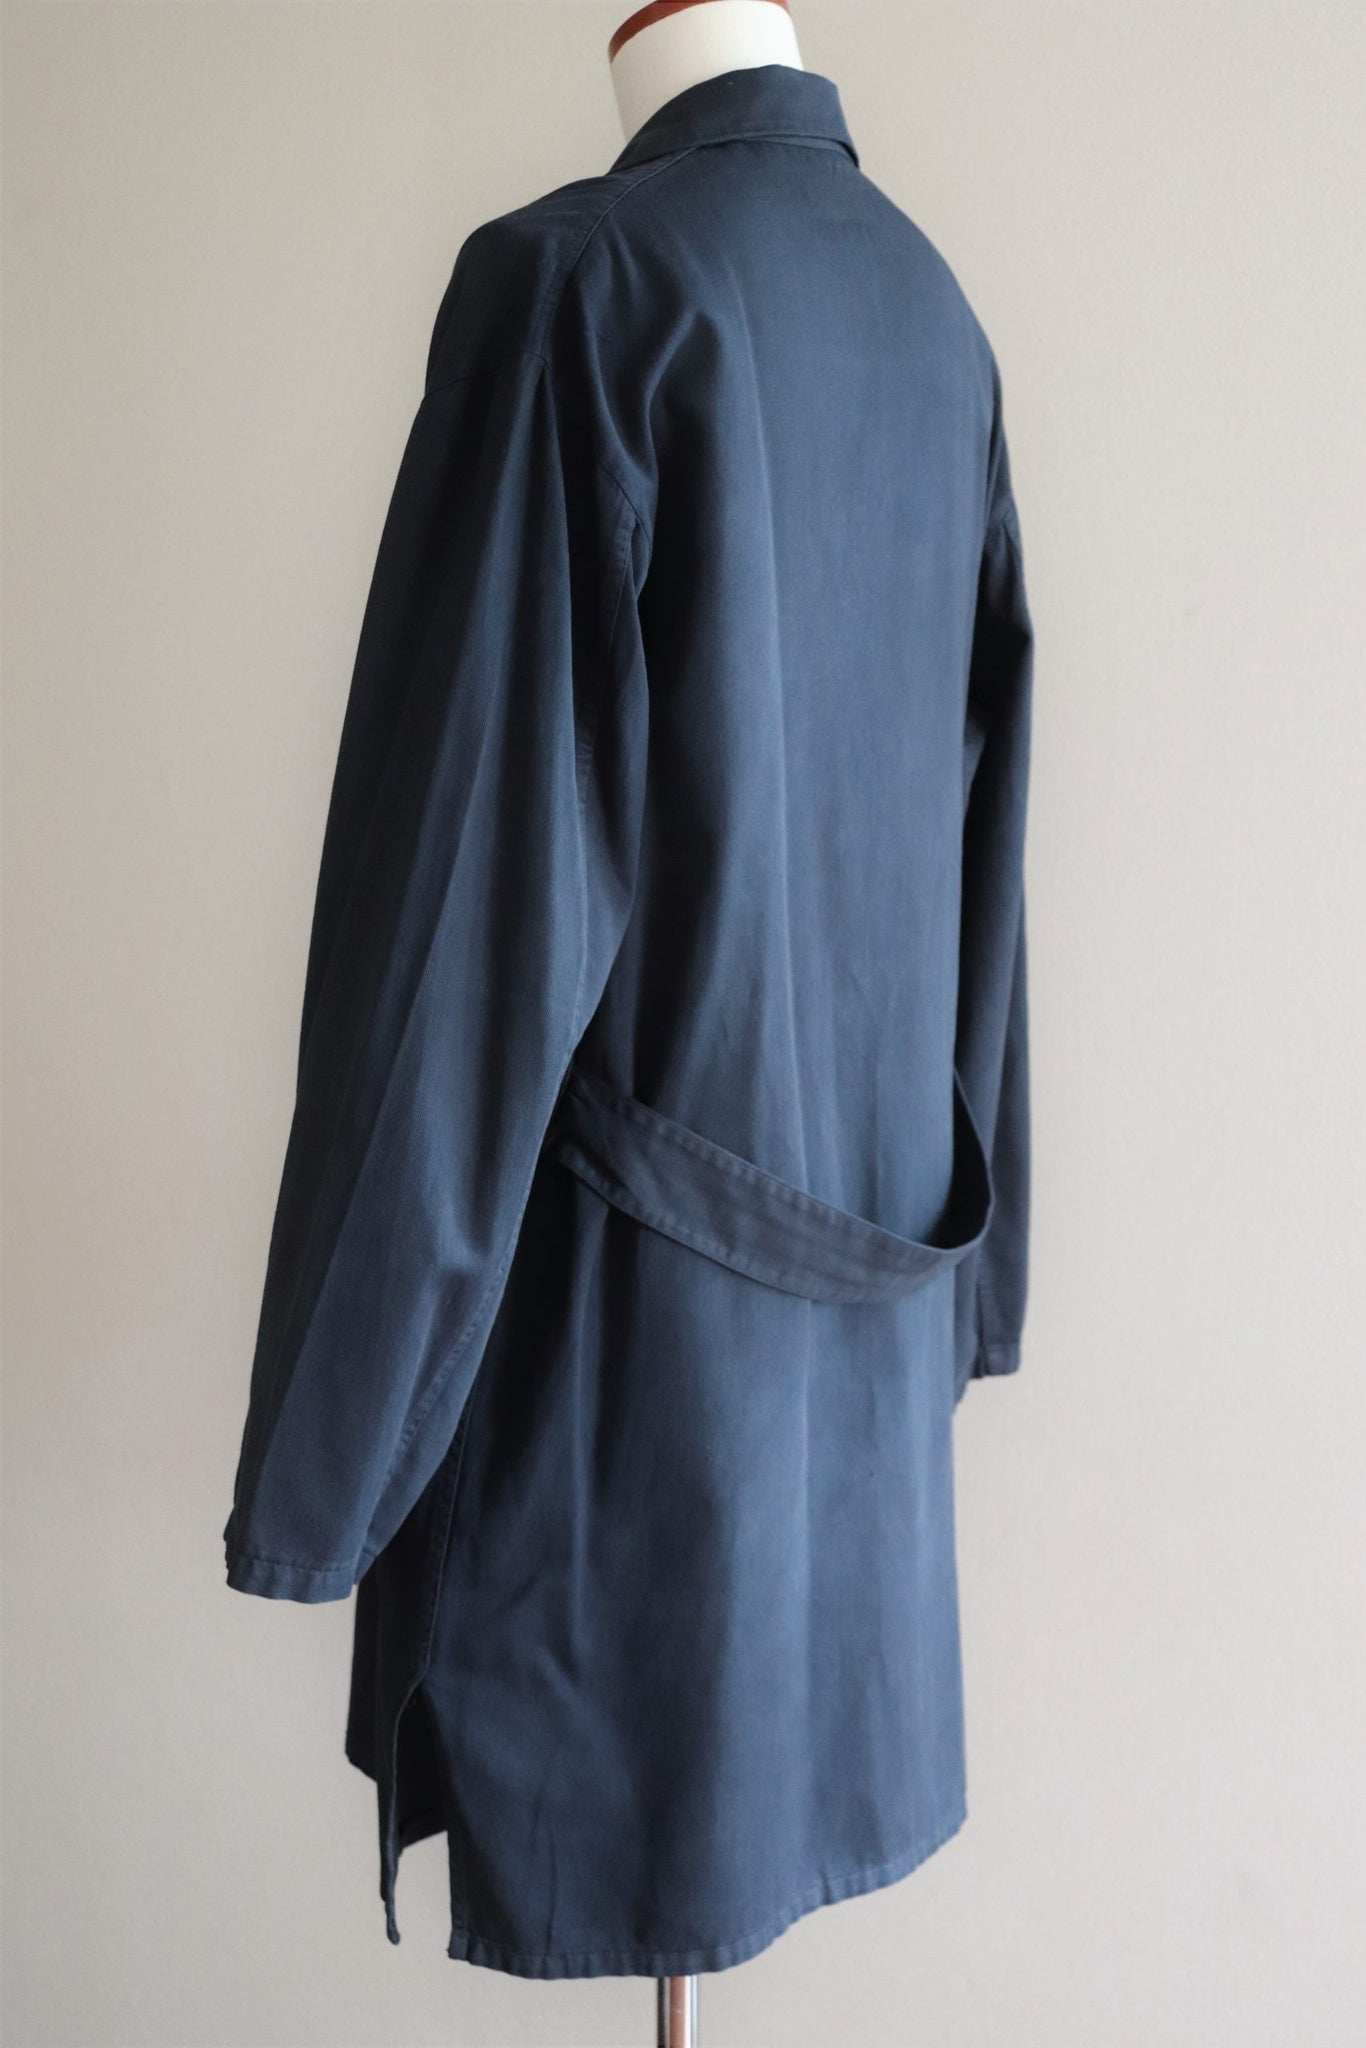 1940s French Chore Jacket